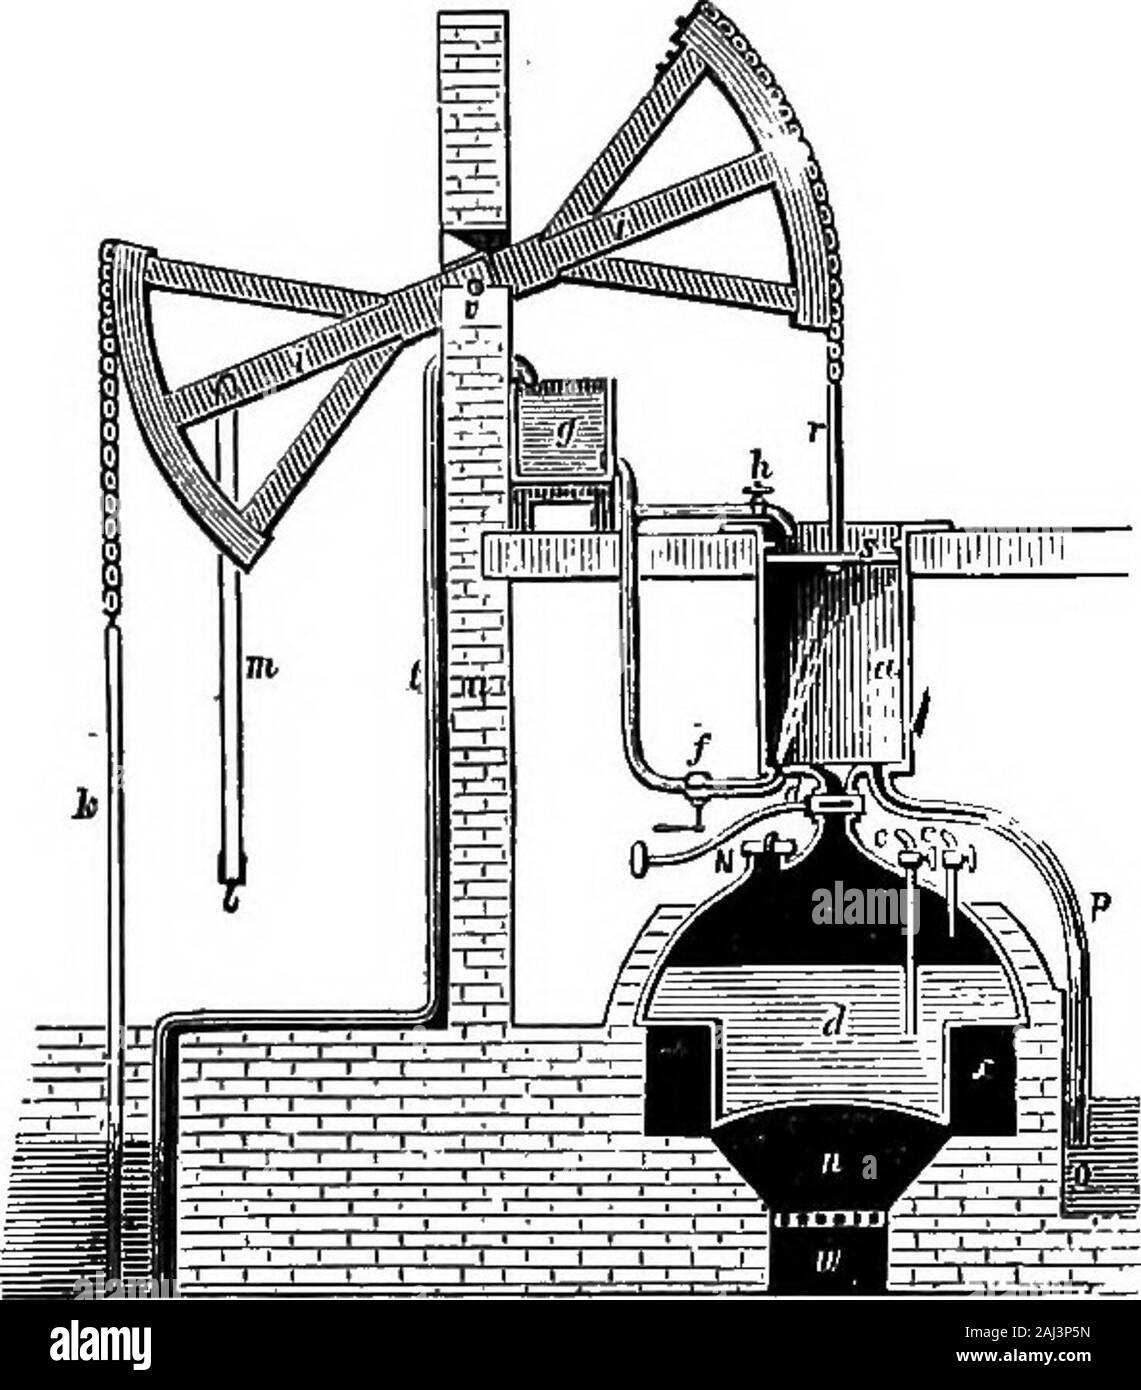 Una historia del crecimiento de la máquina de vapor . En densation. Un  chorro de agua fue lanzada directamente en lostornillos, así efectuar para  el motor JTewcomen justwhat Desaguliers había hecho para